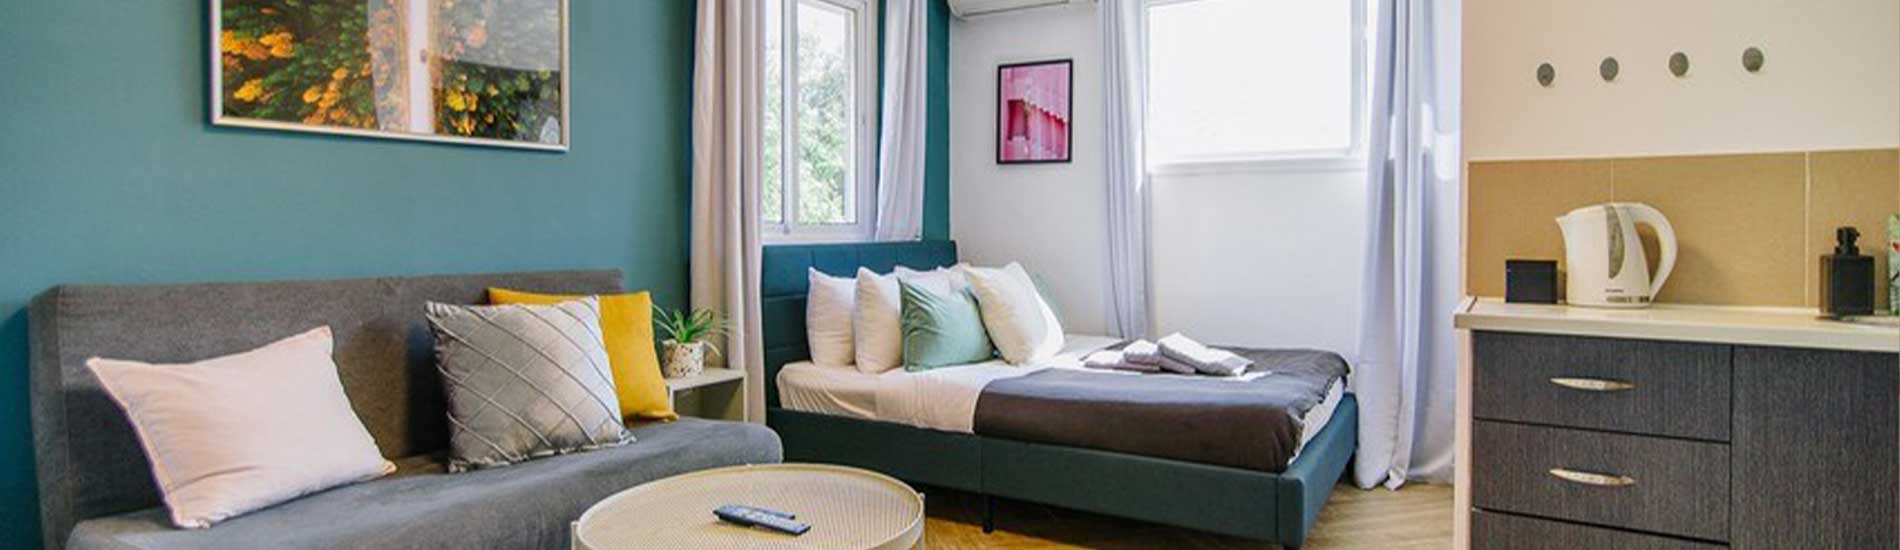 חדר בהוסטל בטא תל אביב, מיטה זוגית, מטבחון, ספה, שולחן